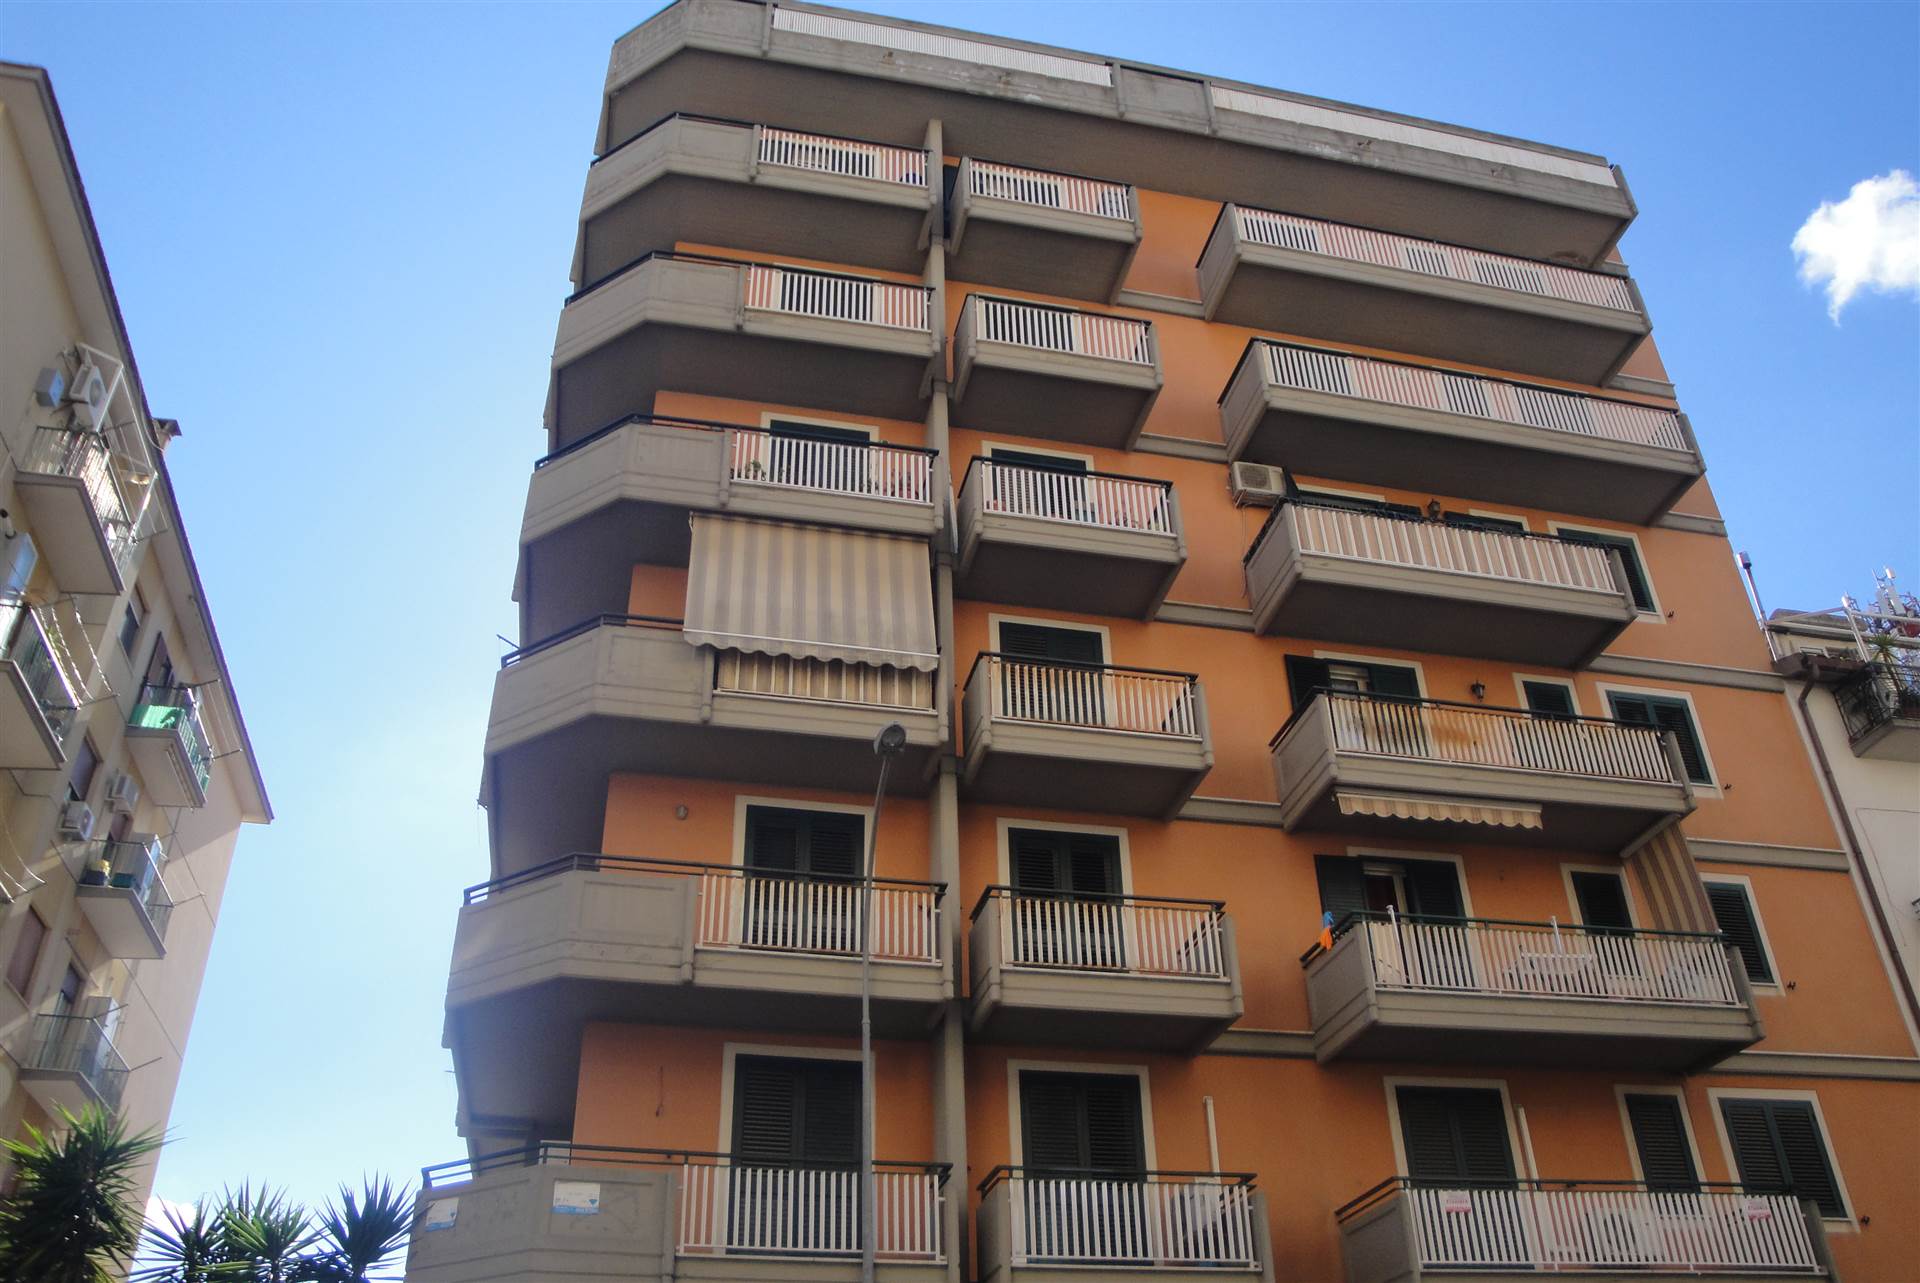 Appartamento in Via Leone Xiii 22 in zona Regione,sicilia,malta,leone Xiii,via Libertà,tribunale a Caltanissetta